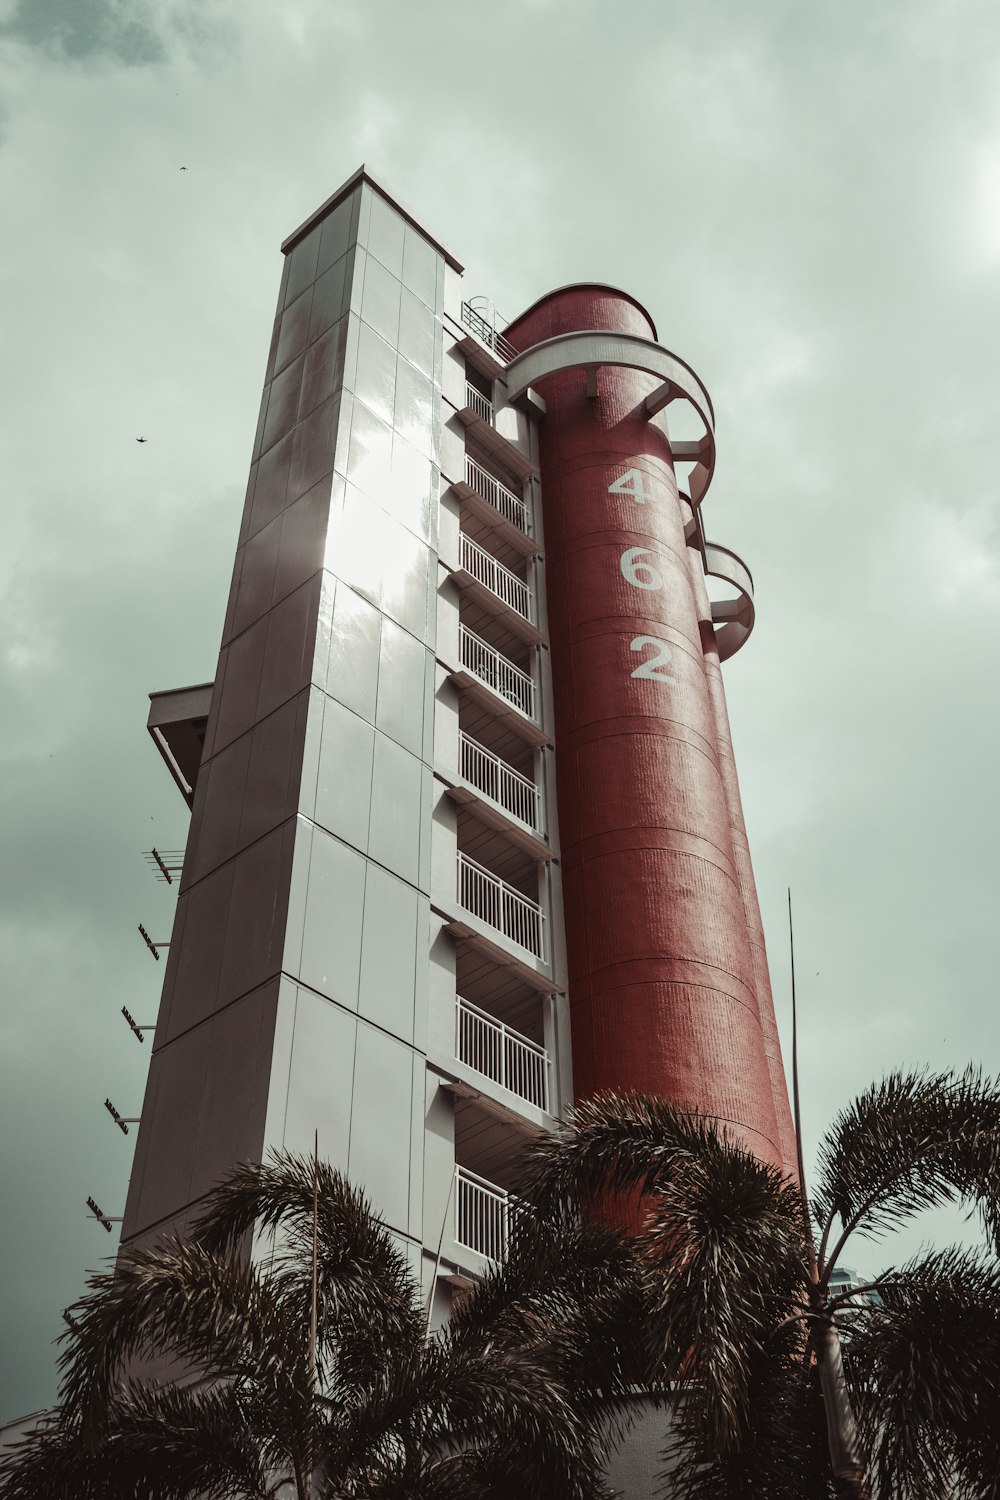 Un alto edificio rojo y blanco junto a palmeras